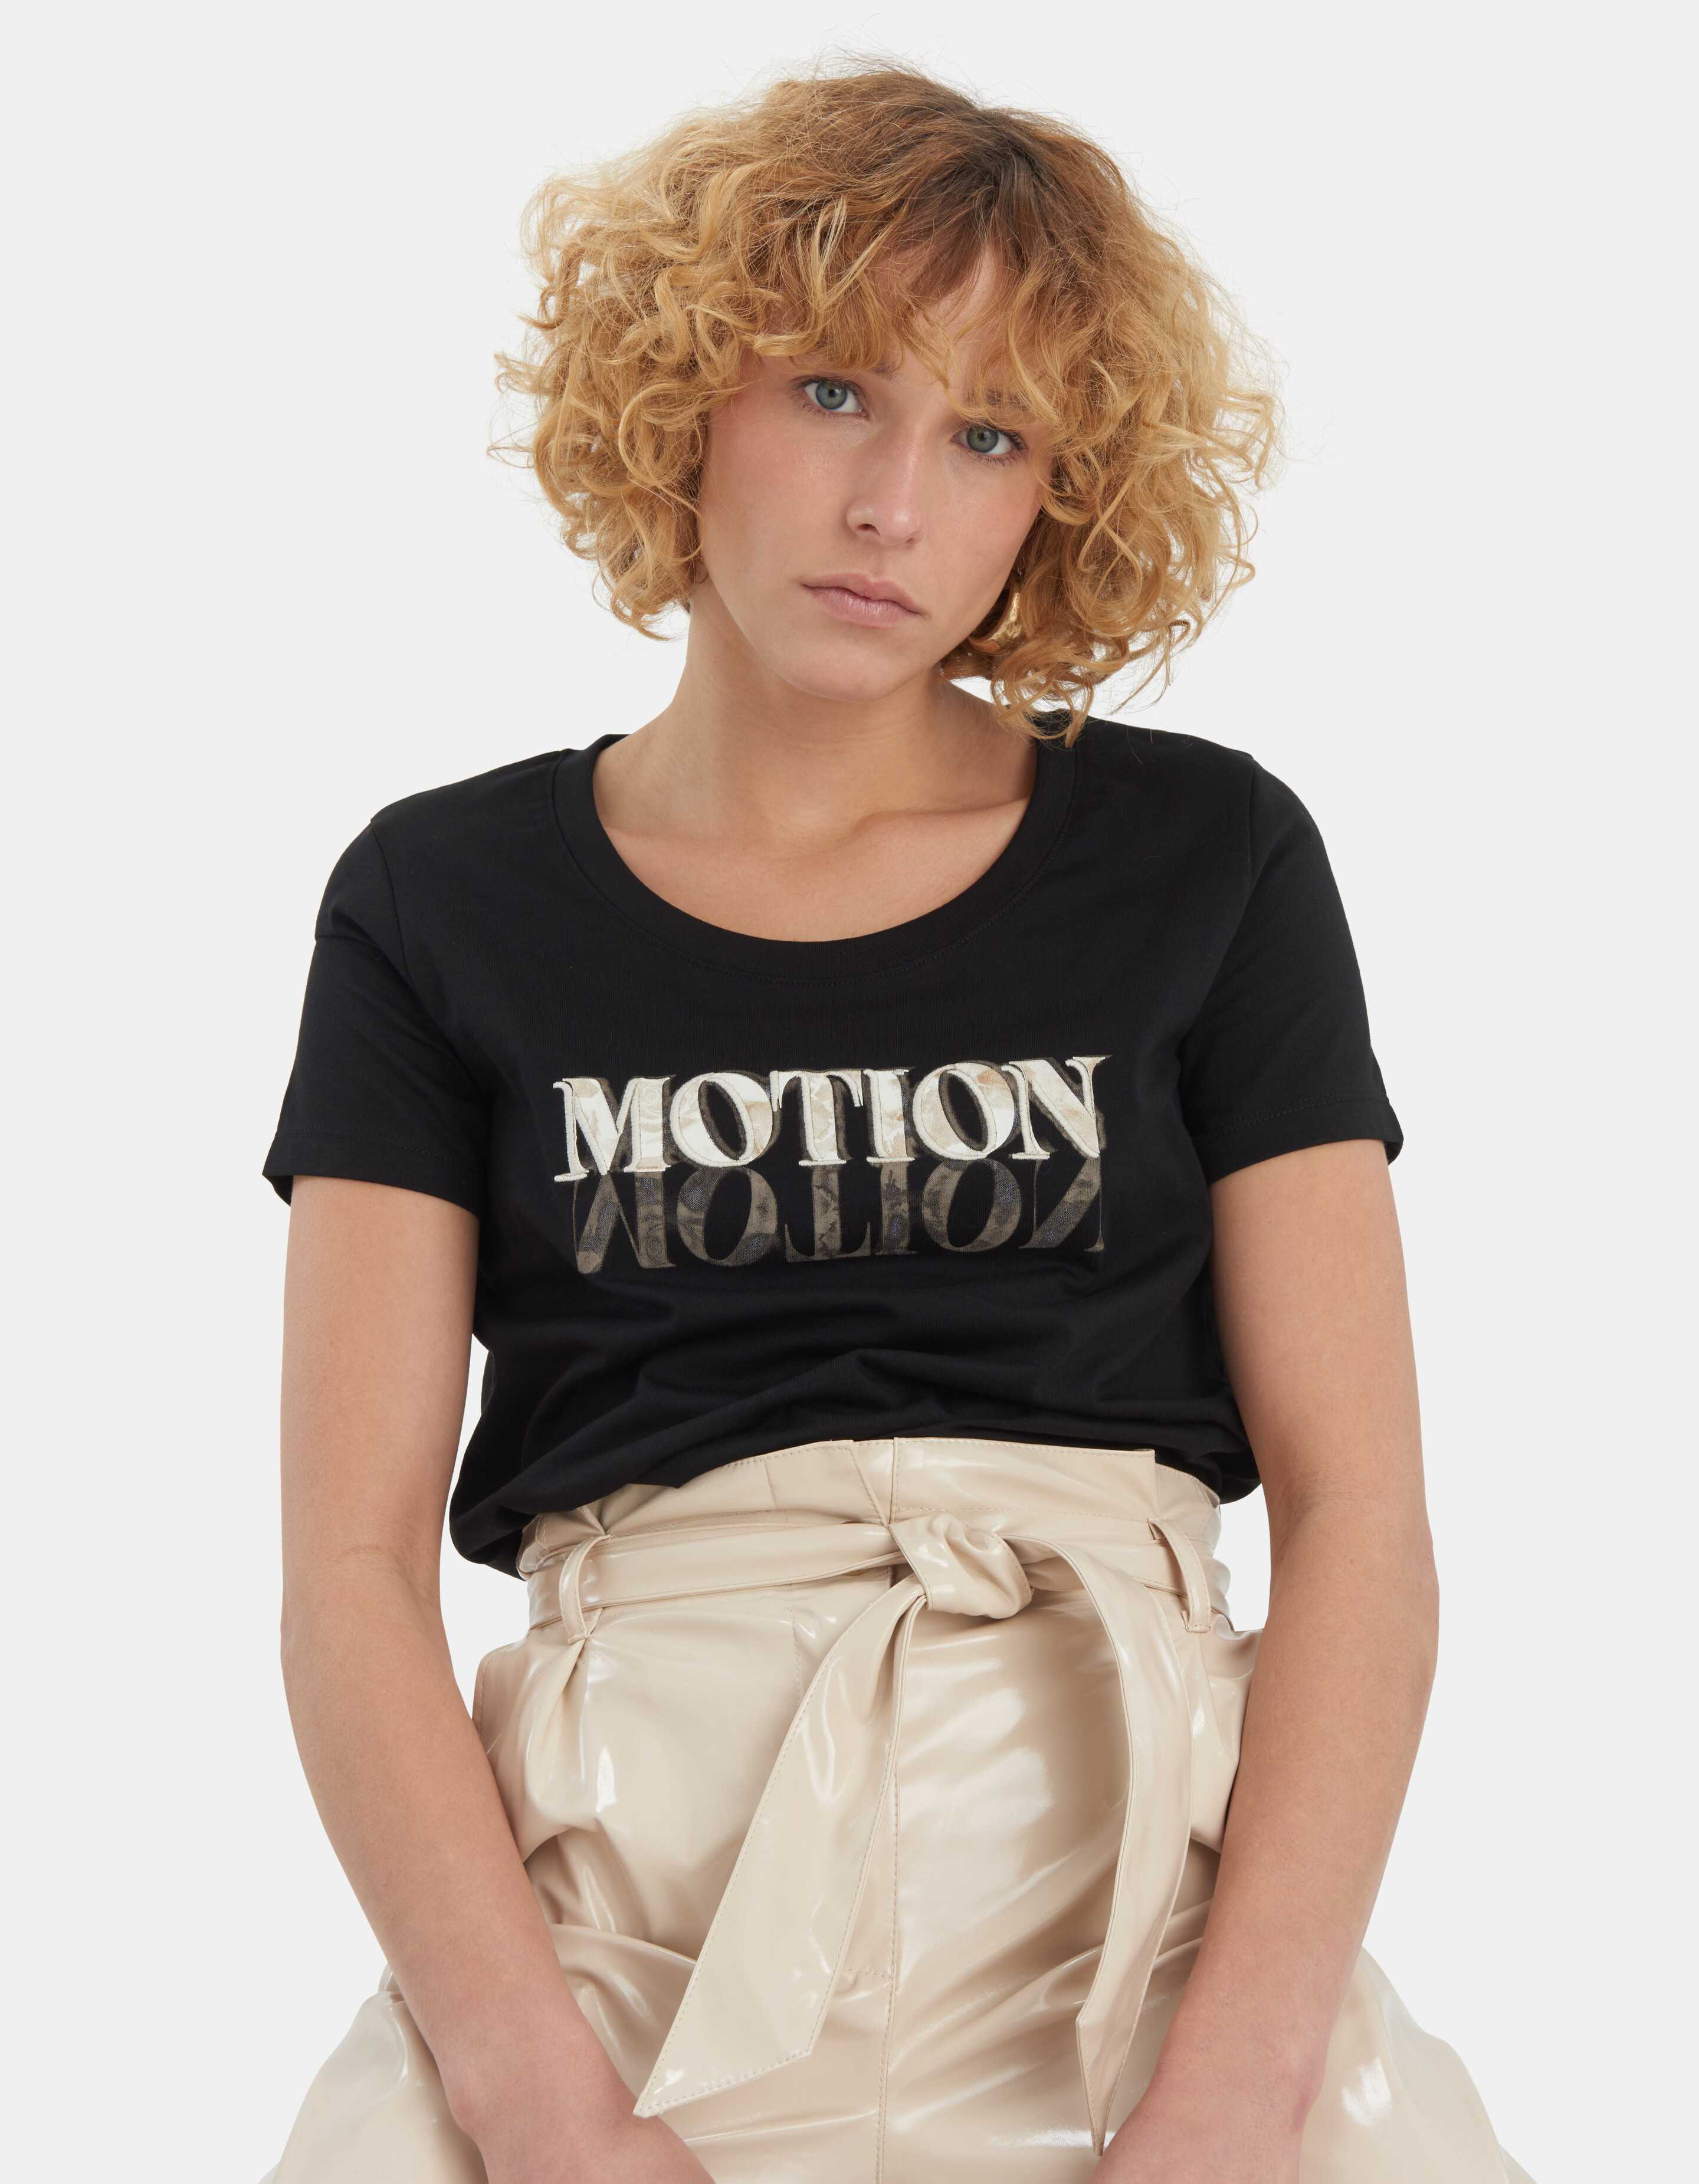 Motion T-shirt EKSEPT